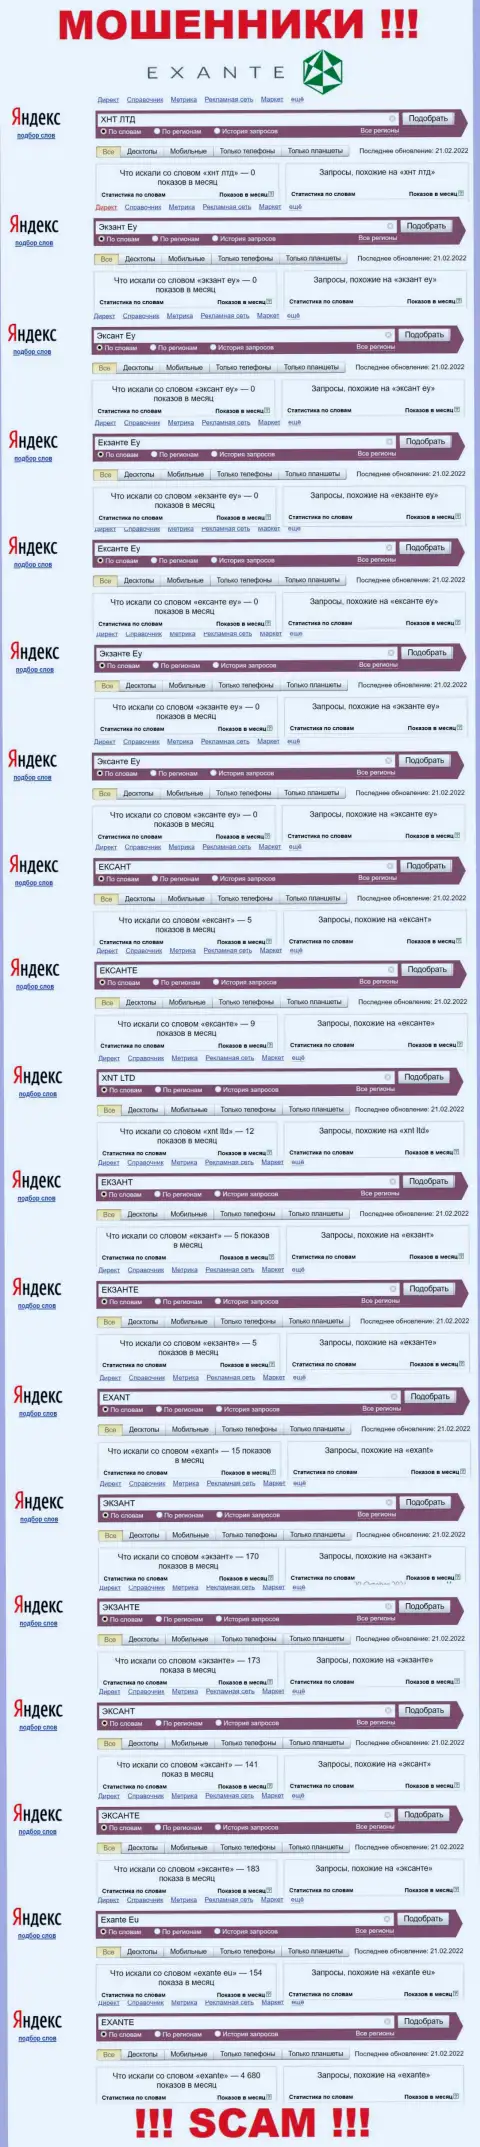 Суммарное число запросов в поисковиках интернет сети по бренду мошенников ЭКЗАНТЕ